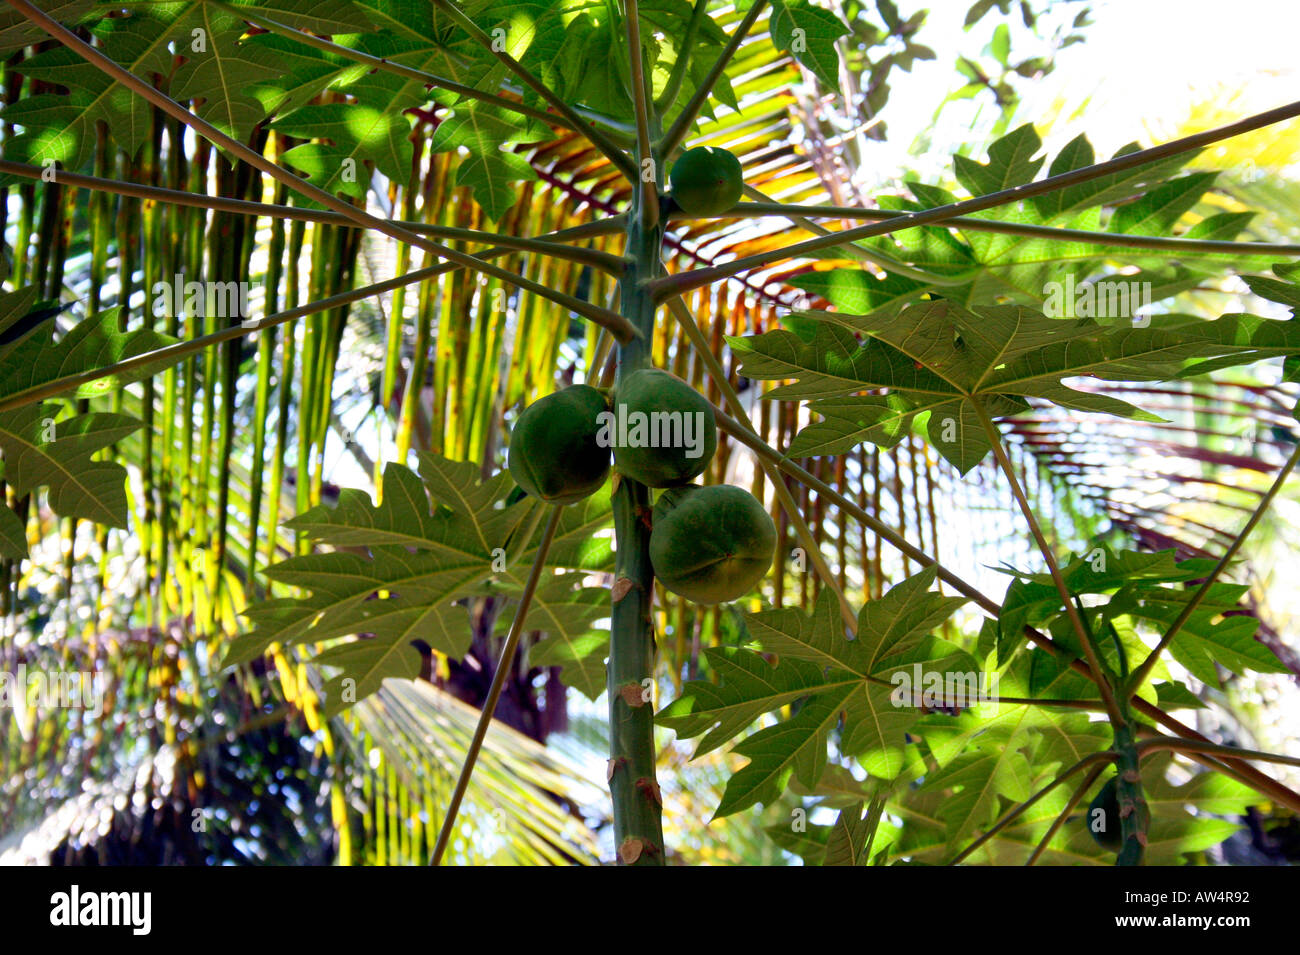 Fresh papayas in the tree Stock Photo